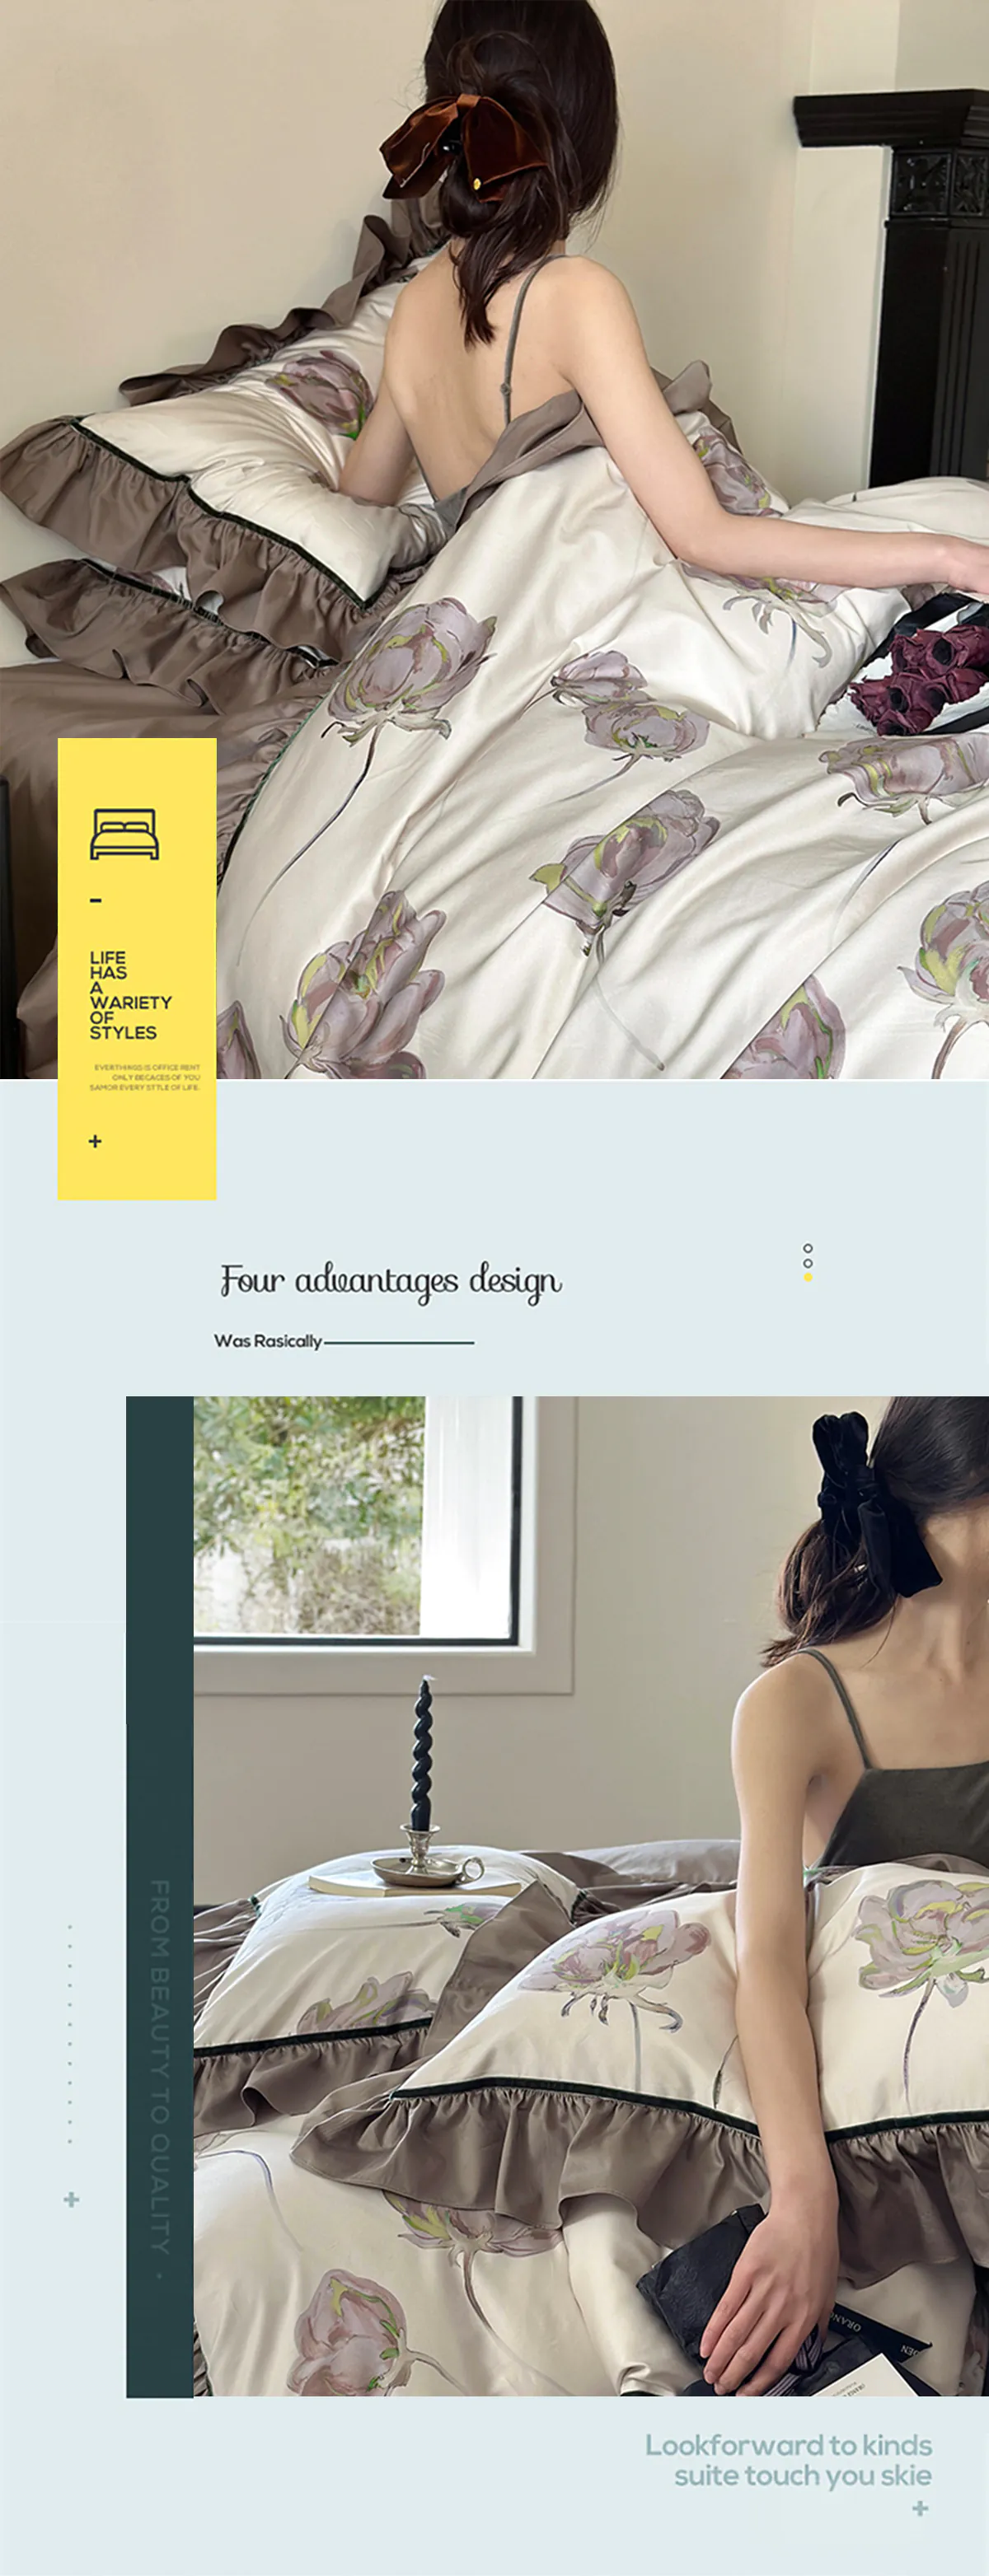 Home-Textile-Reactive-Floral-Print-Long-Staple-Cotton-Duvet-Cover-Set16